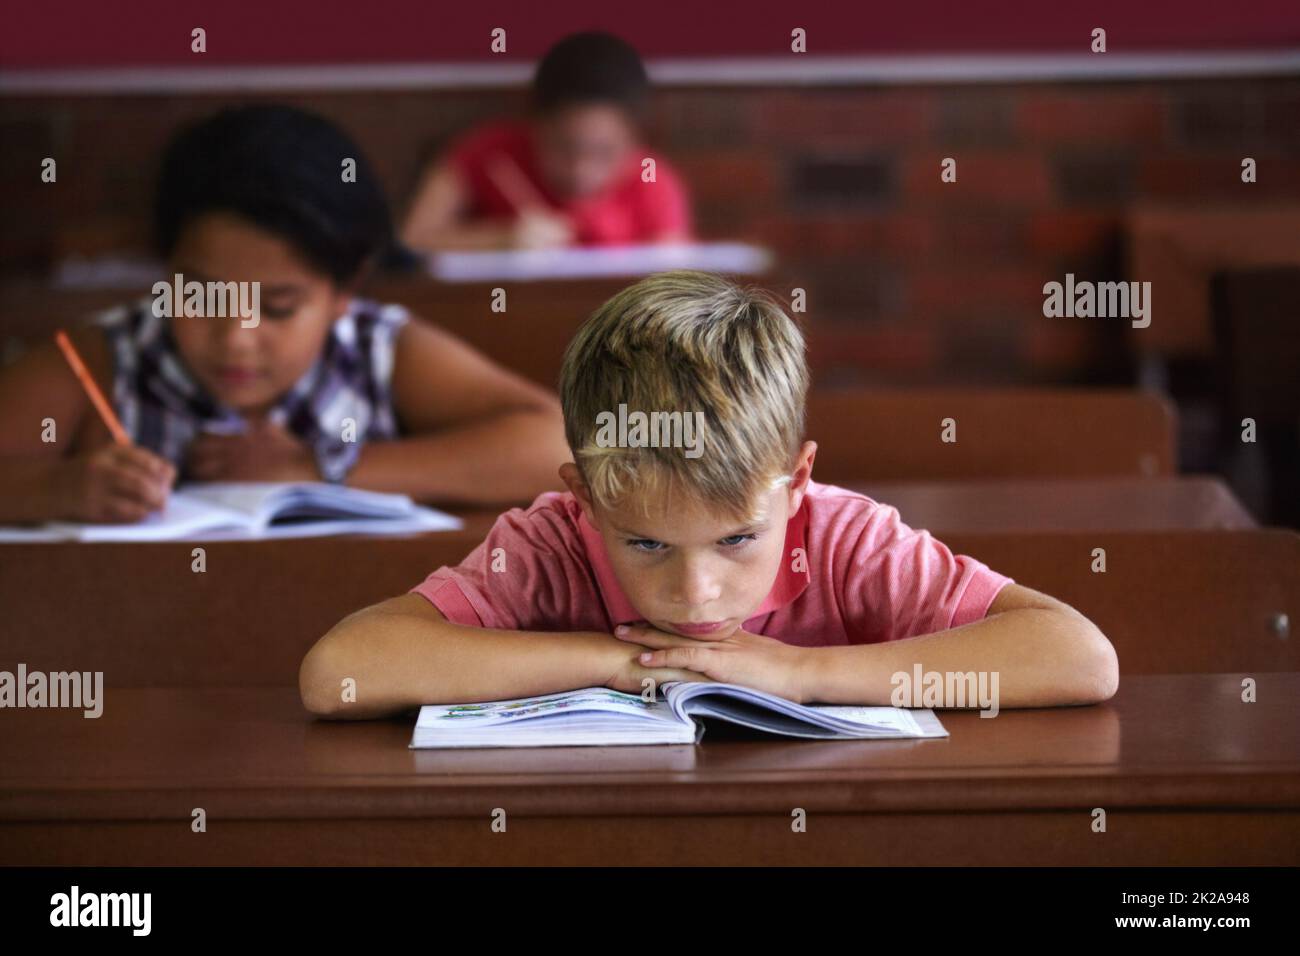 Die Schule ist sauer. Ein kleiner Junge, der seinen Kopf auf seinen Armen ruht, während er in einem Klassenzimmer sitzt und langweilig aussieht. Stockfoto